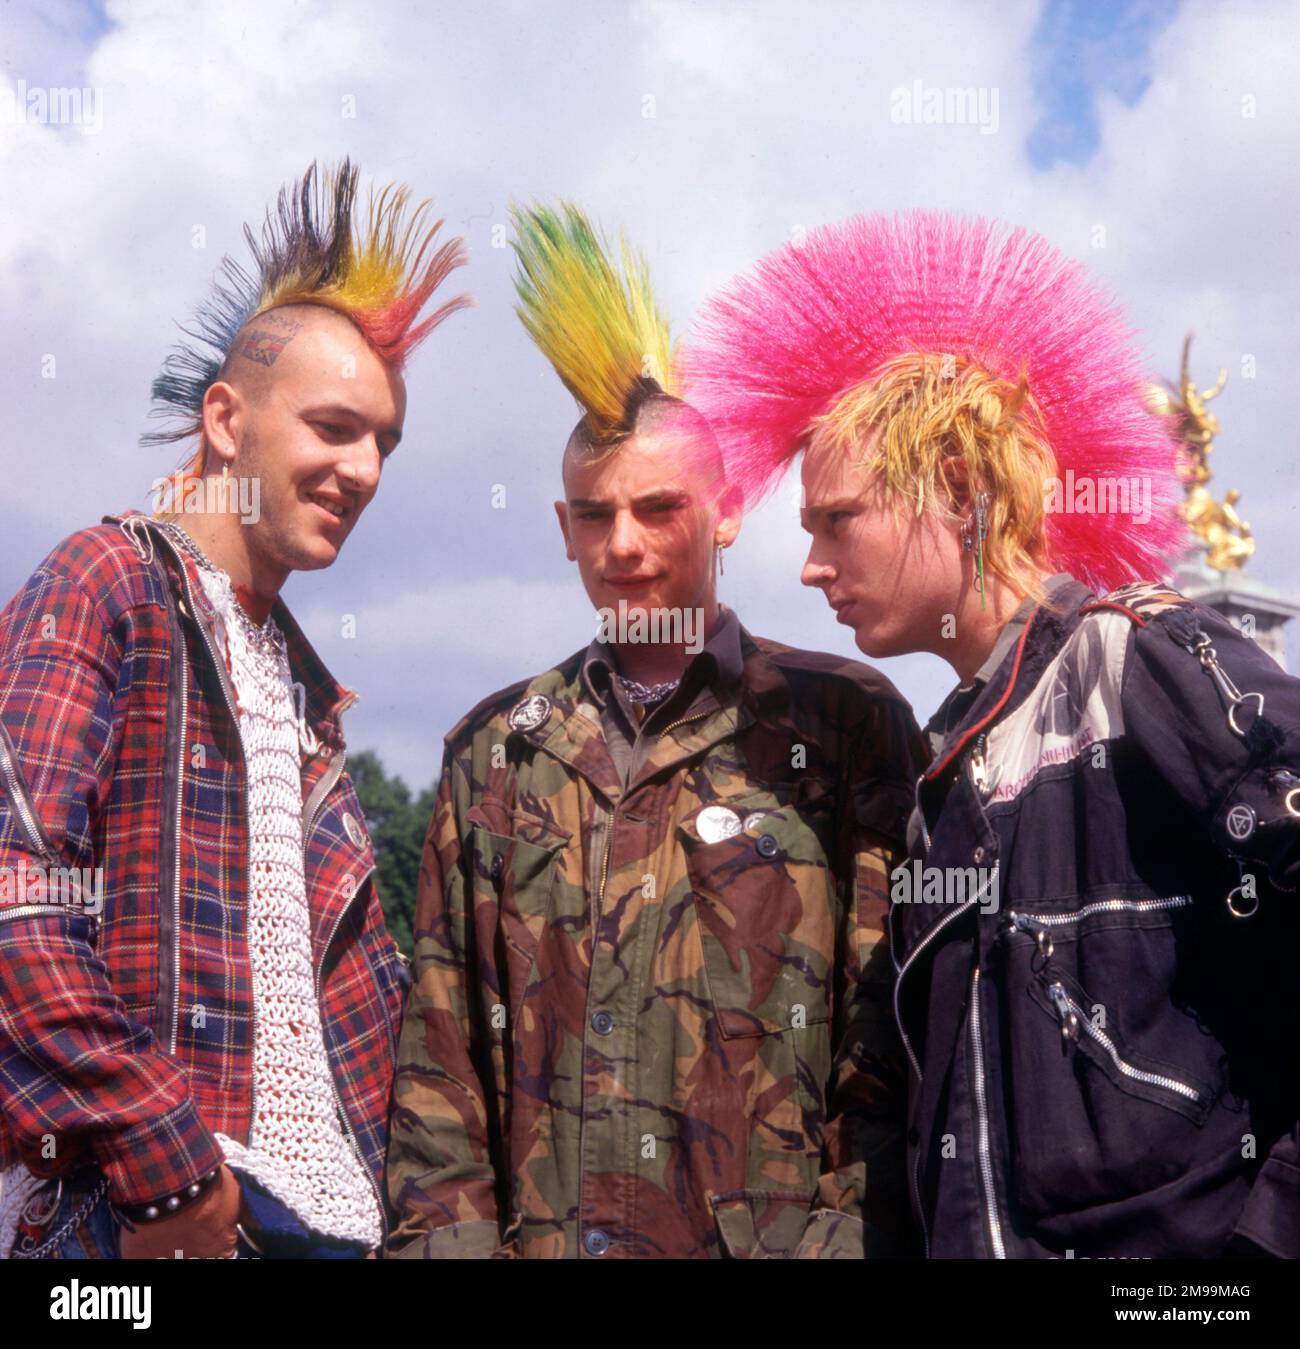 Londres - trois punks avec des coupes de cheveux mohican teints. Banque D'Images